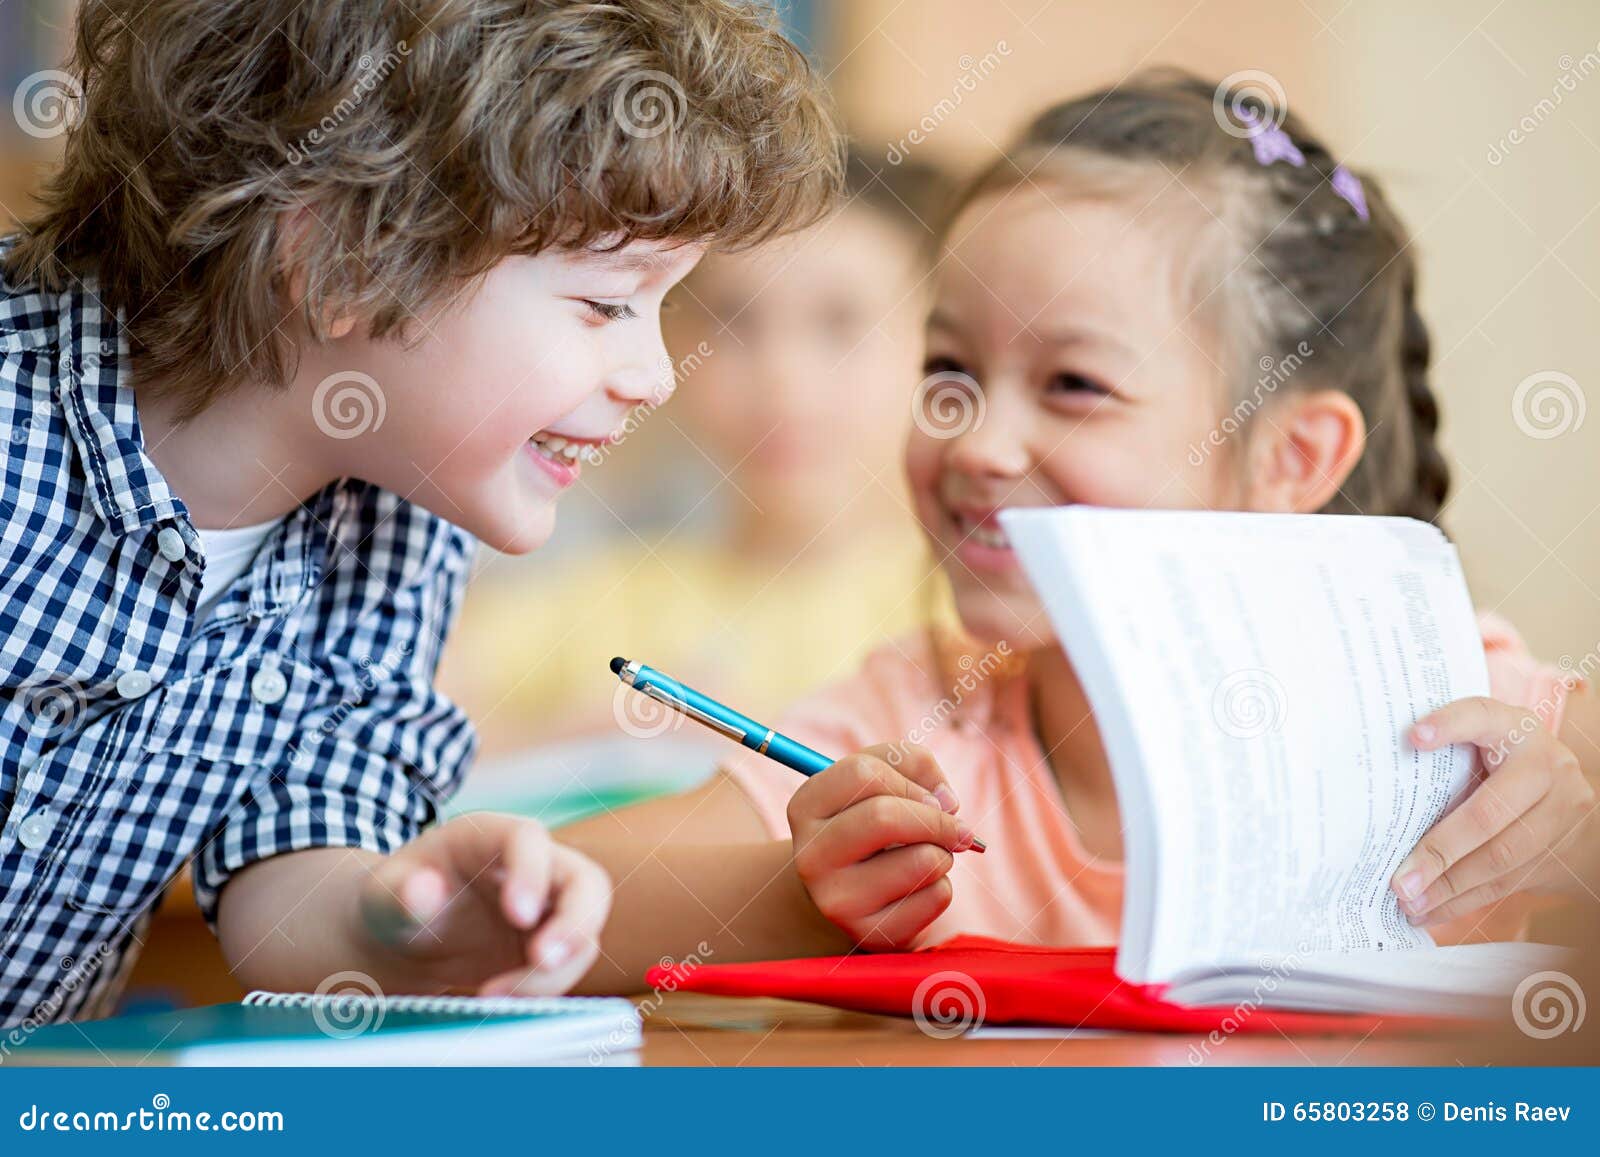 Mitschüler. Lächelnde Schulkinder im Klassenzimmer